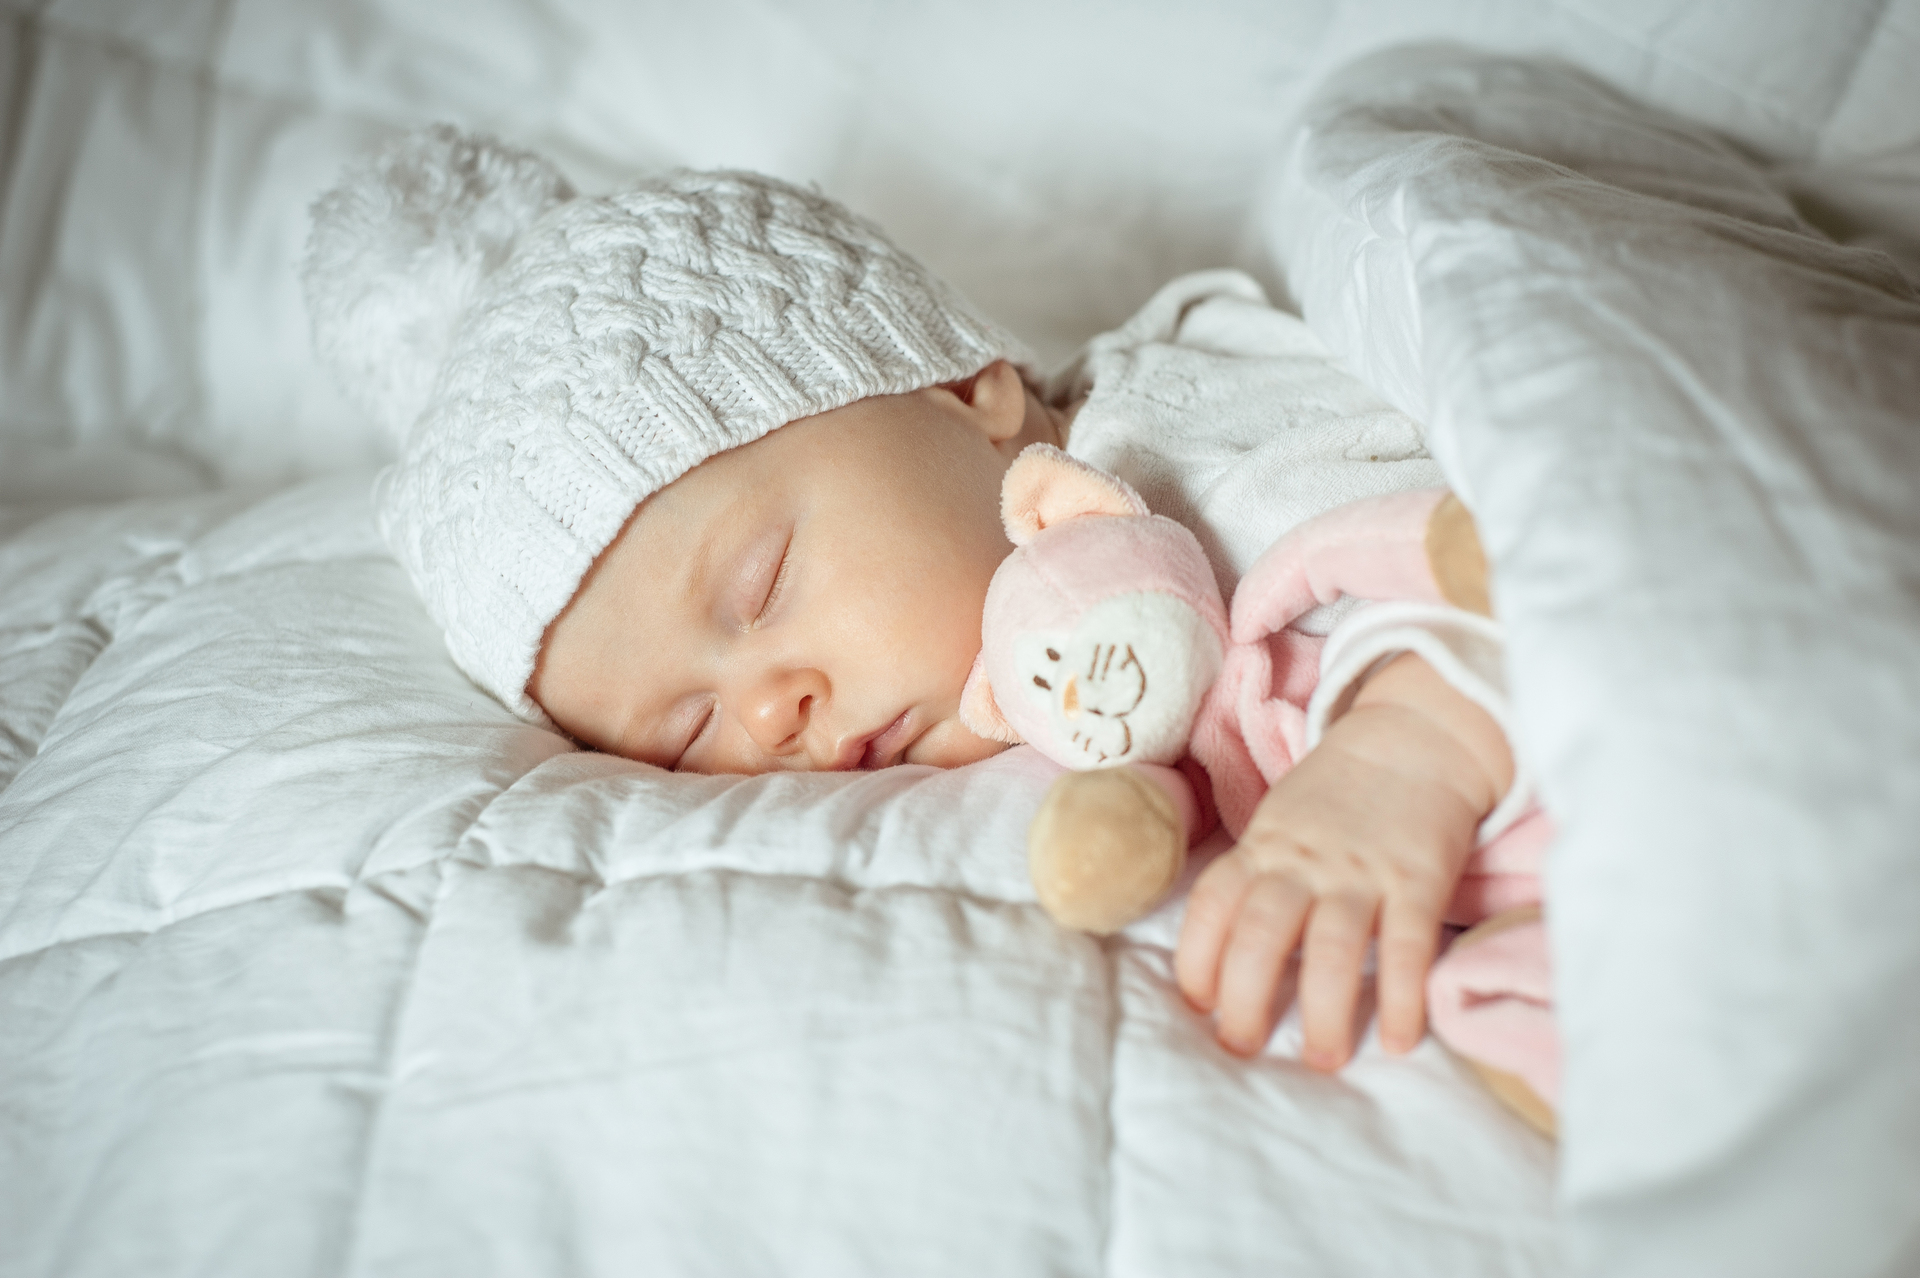 Na tym wzruszającym obrazku możemy zobaczyć spokojnie śpiącego niemowlaka, któremu zdiagnozowano obecność leukocytów w moczu. Choć jest to niepokojące, opiekunowie mogą znaleźć pocieszenie w tym, że odpowiednie środki diagnostyczne i leczenie będą podjęte, aby zapewnić zdrowie i dobre samopoczucie malucha. Ważne jest, aby skonsultować się z lekarzem w celu ustalenia przyczyny i dalszego postępowania w przypadku stwierdzenia leukocytów w moczu u niemowlaka